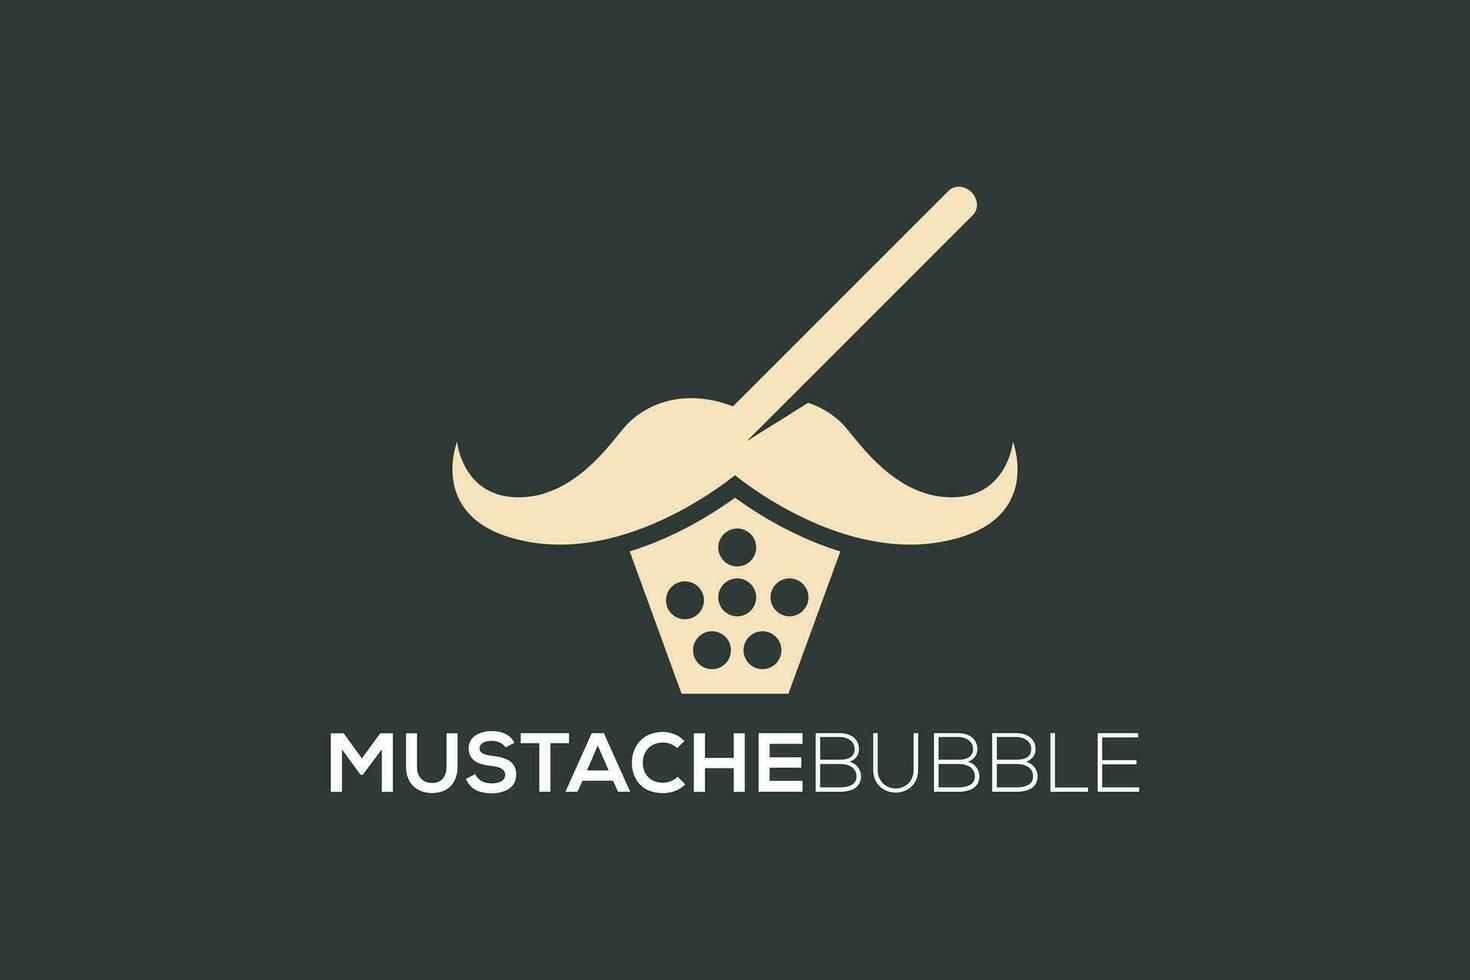 Mustache Bubble Tea logo design vector template